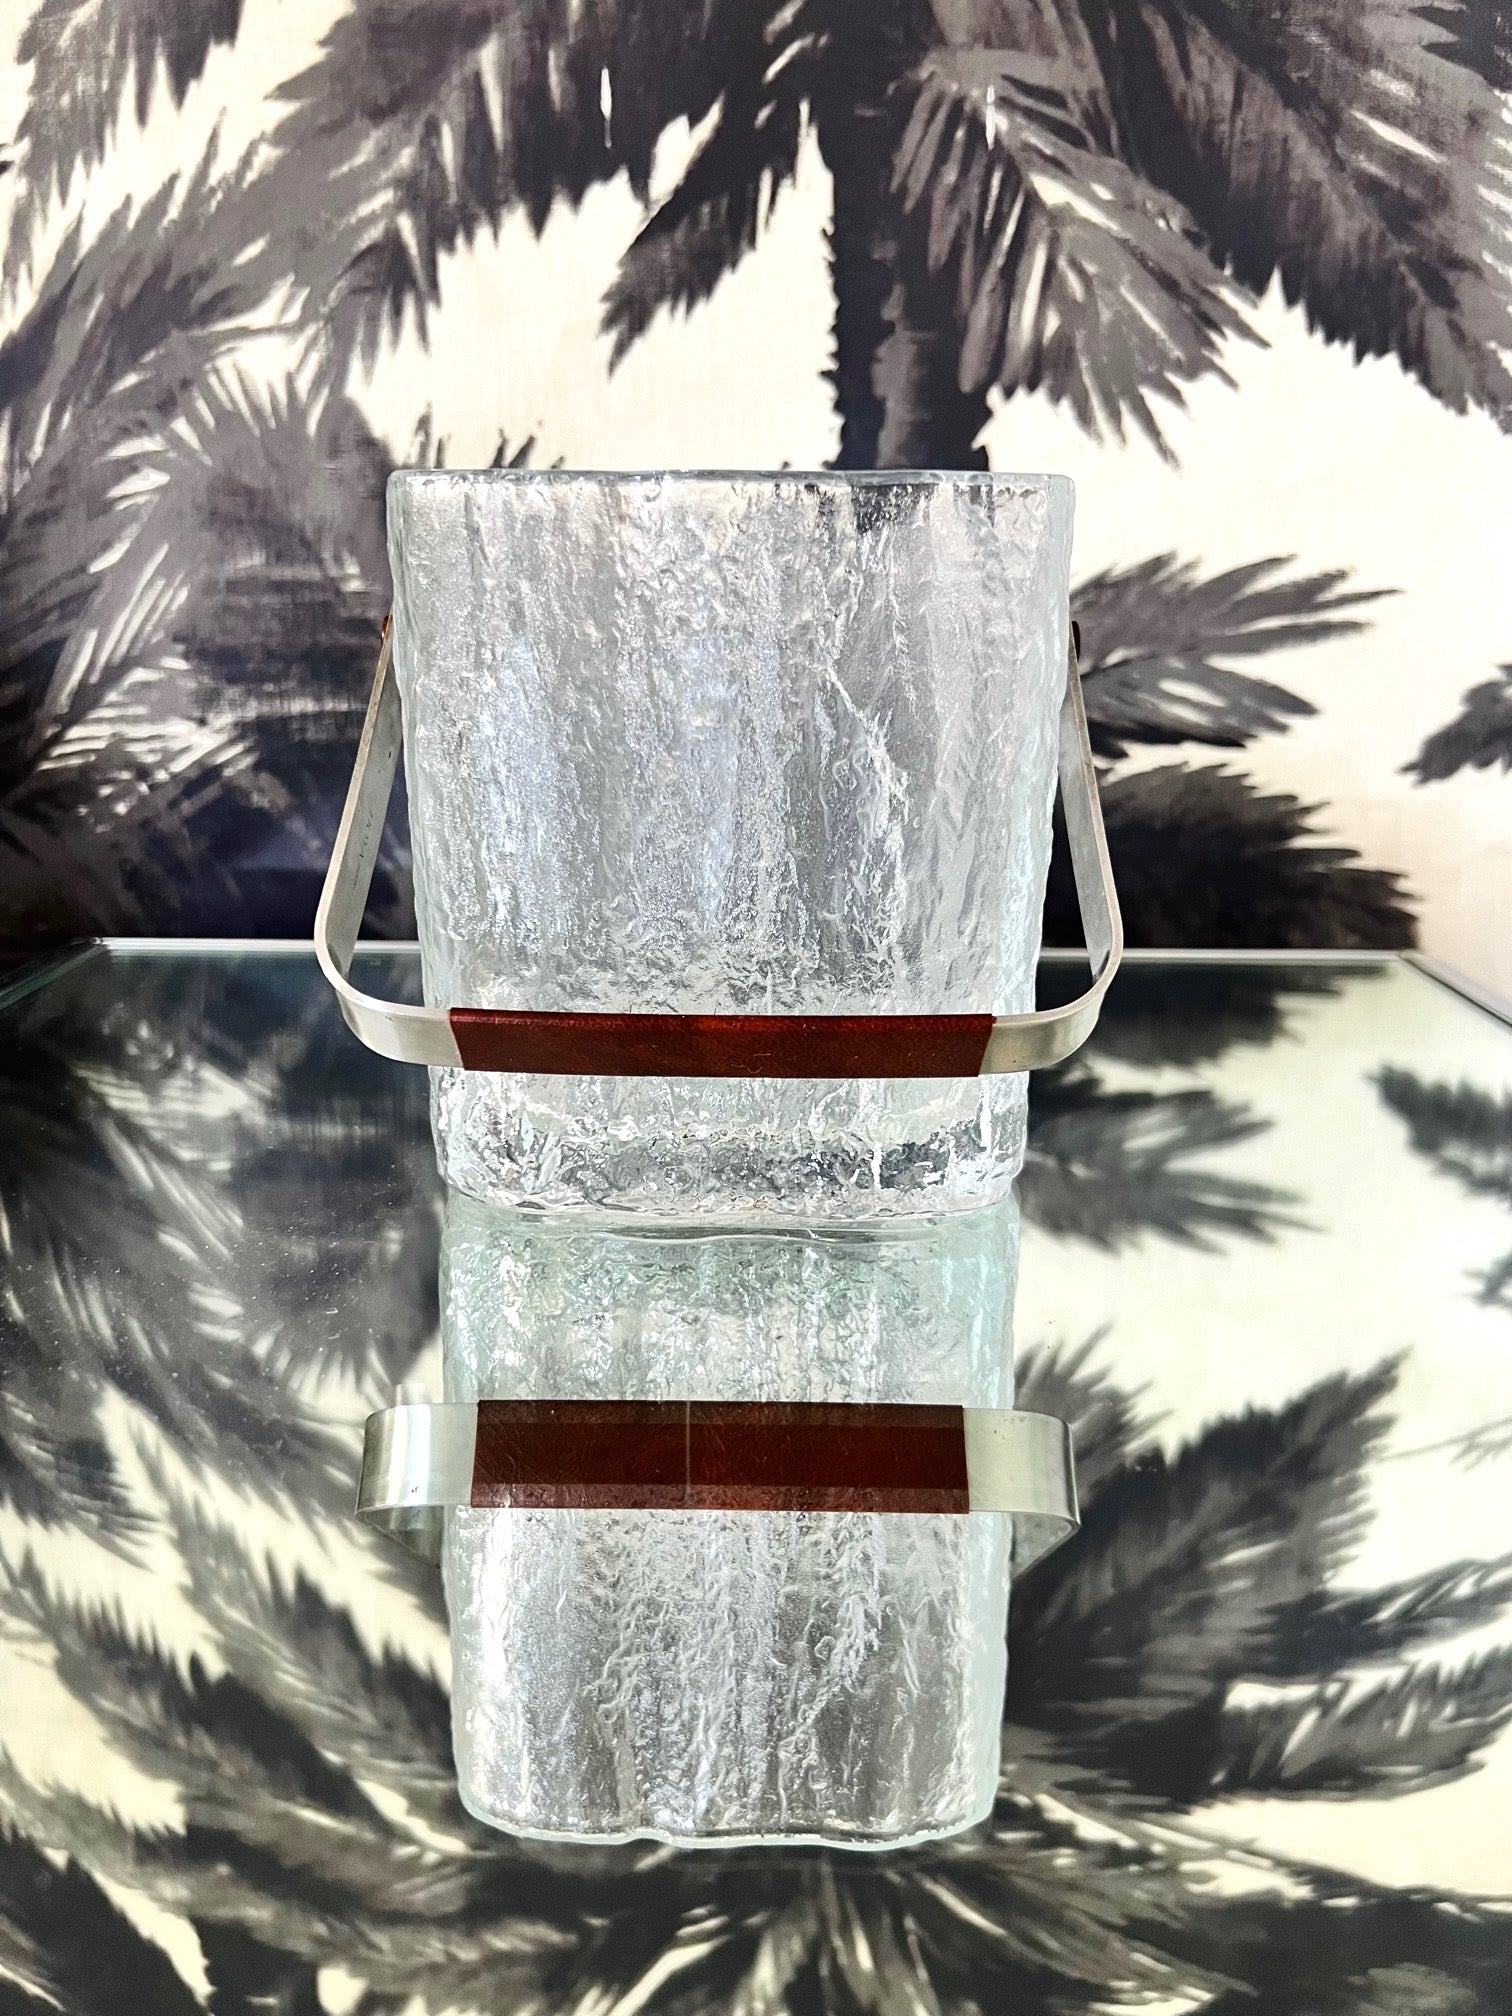 Seau à glace japonais du milieu du siècle, de taille personnelle, composé de verre épais et épais avec des bords polis et une base translucide. Le seau vintage présente un design texturé de glaçons et est doté d'une poignée en acier inoxydable